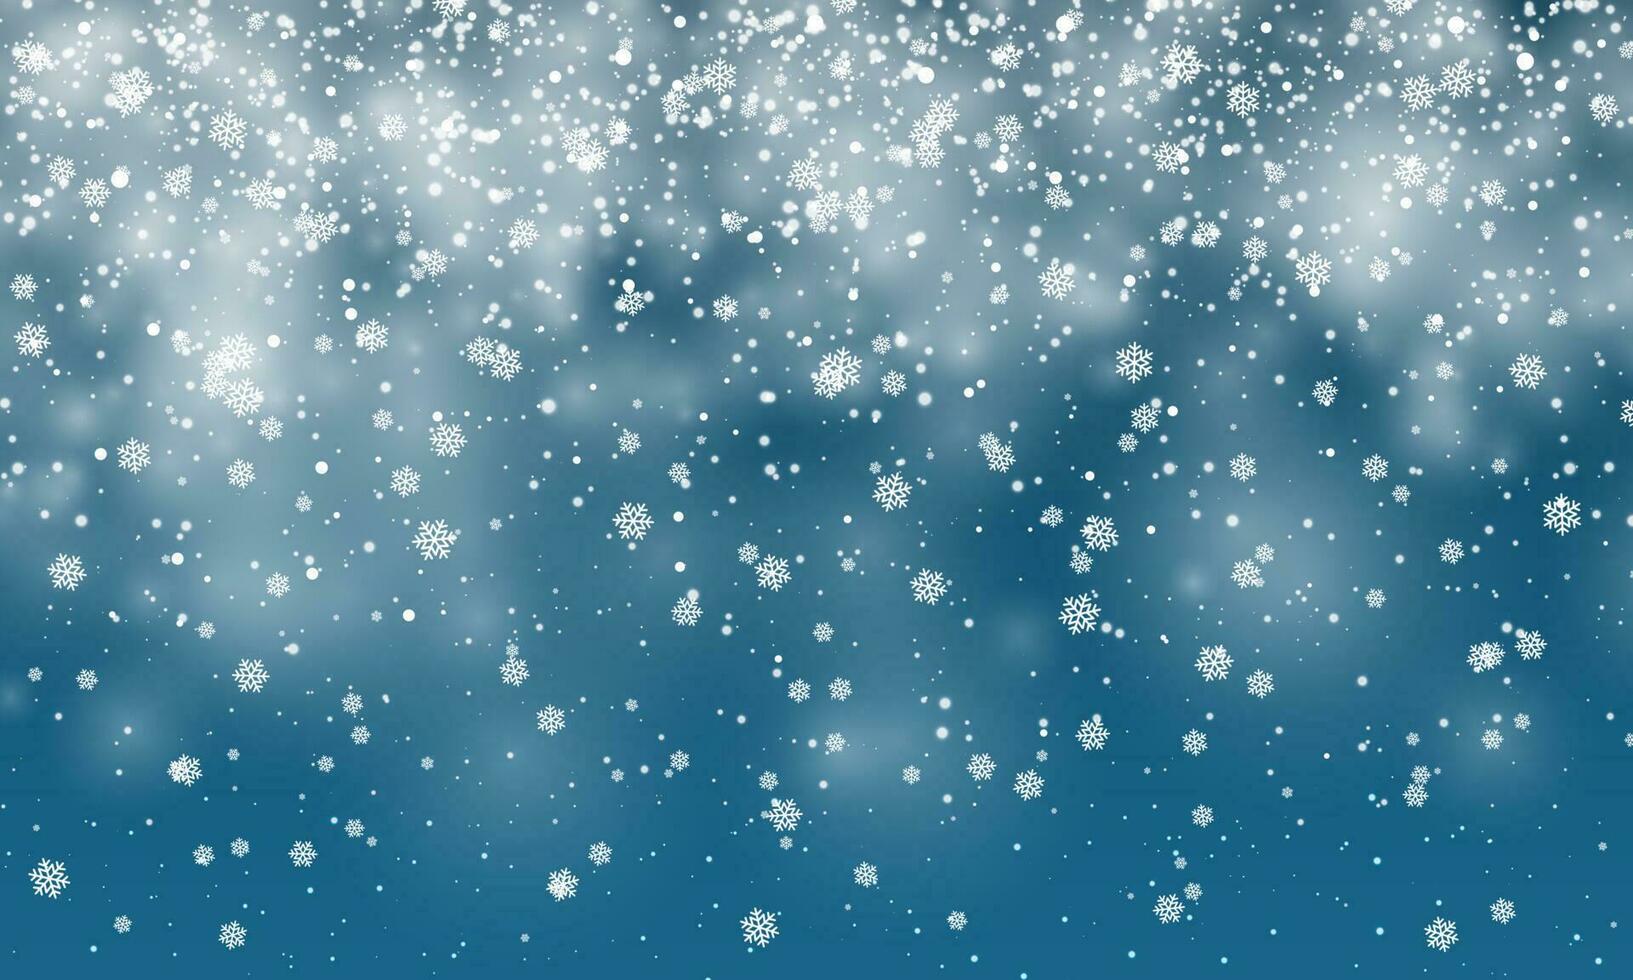 Weihnachten Schnee. fallen Schneeflocken auf Blau Hintergrund. Schneefall. Vektor Illustration